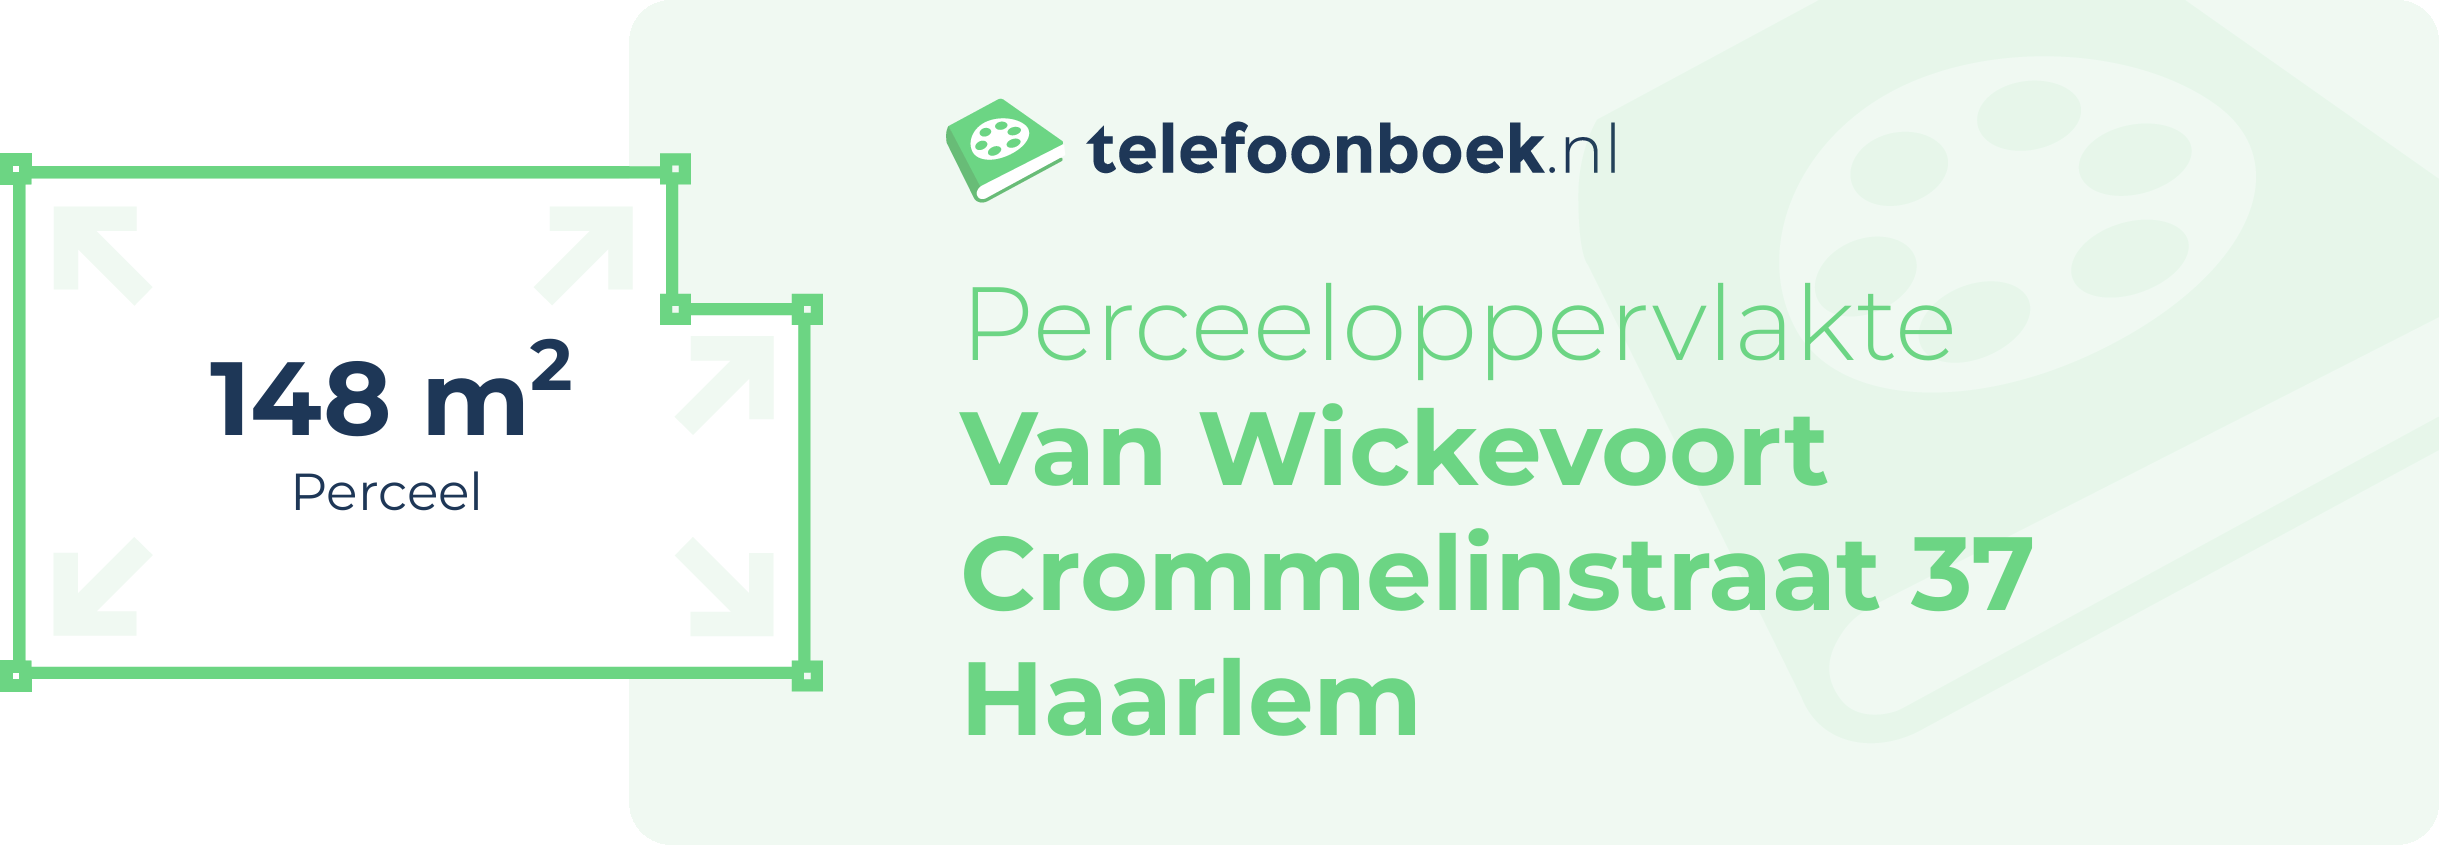 Perceeloppervlakte Van Wickevoort Crommelinstraat 37 Haarlem